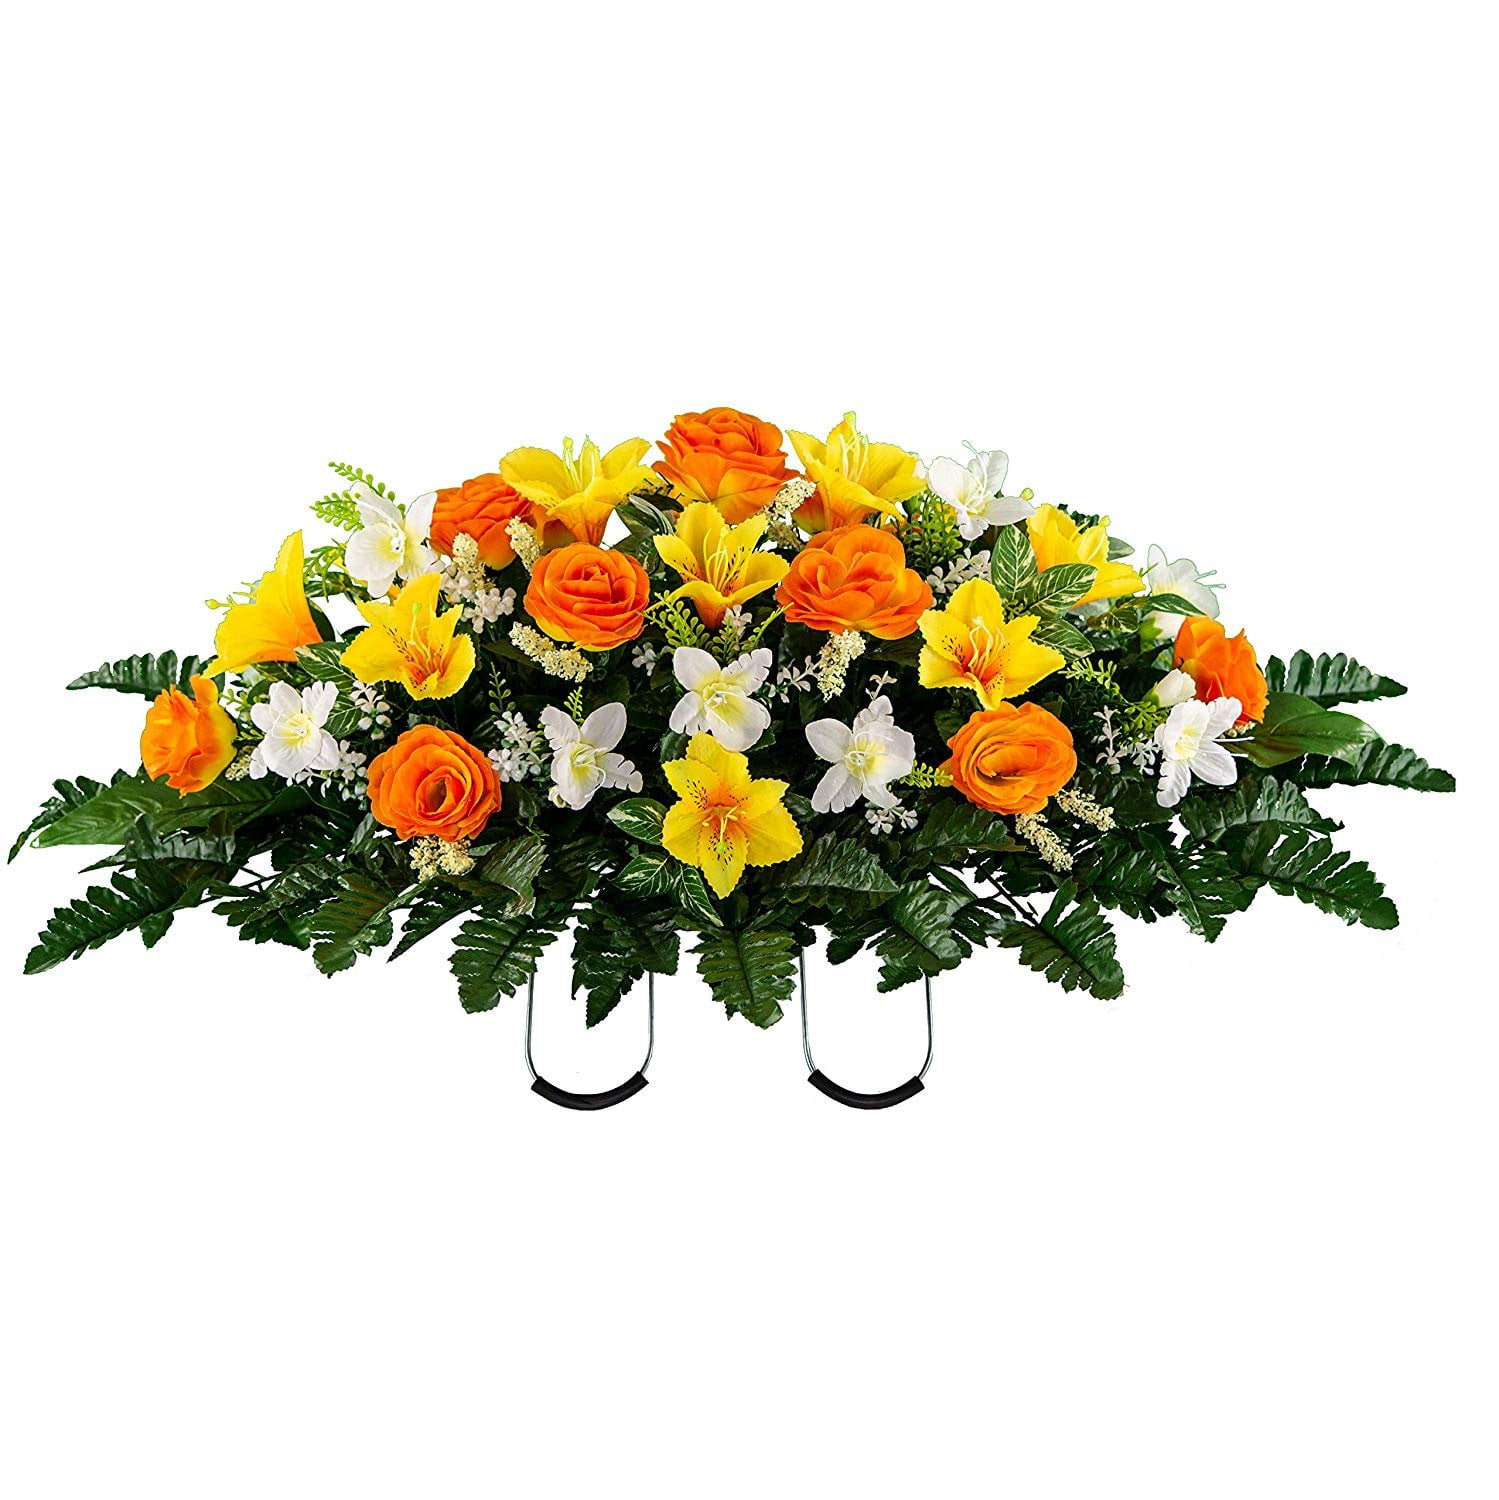 Вайлдберриз искусственные цветы для кладбища. Искусственные цветы на кладбище. Валберис искусственные цветы на кладбище. Искусственные цветы на кладбище название. Могильные цветы оранжевые.